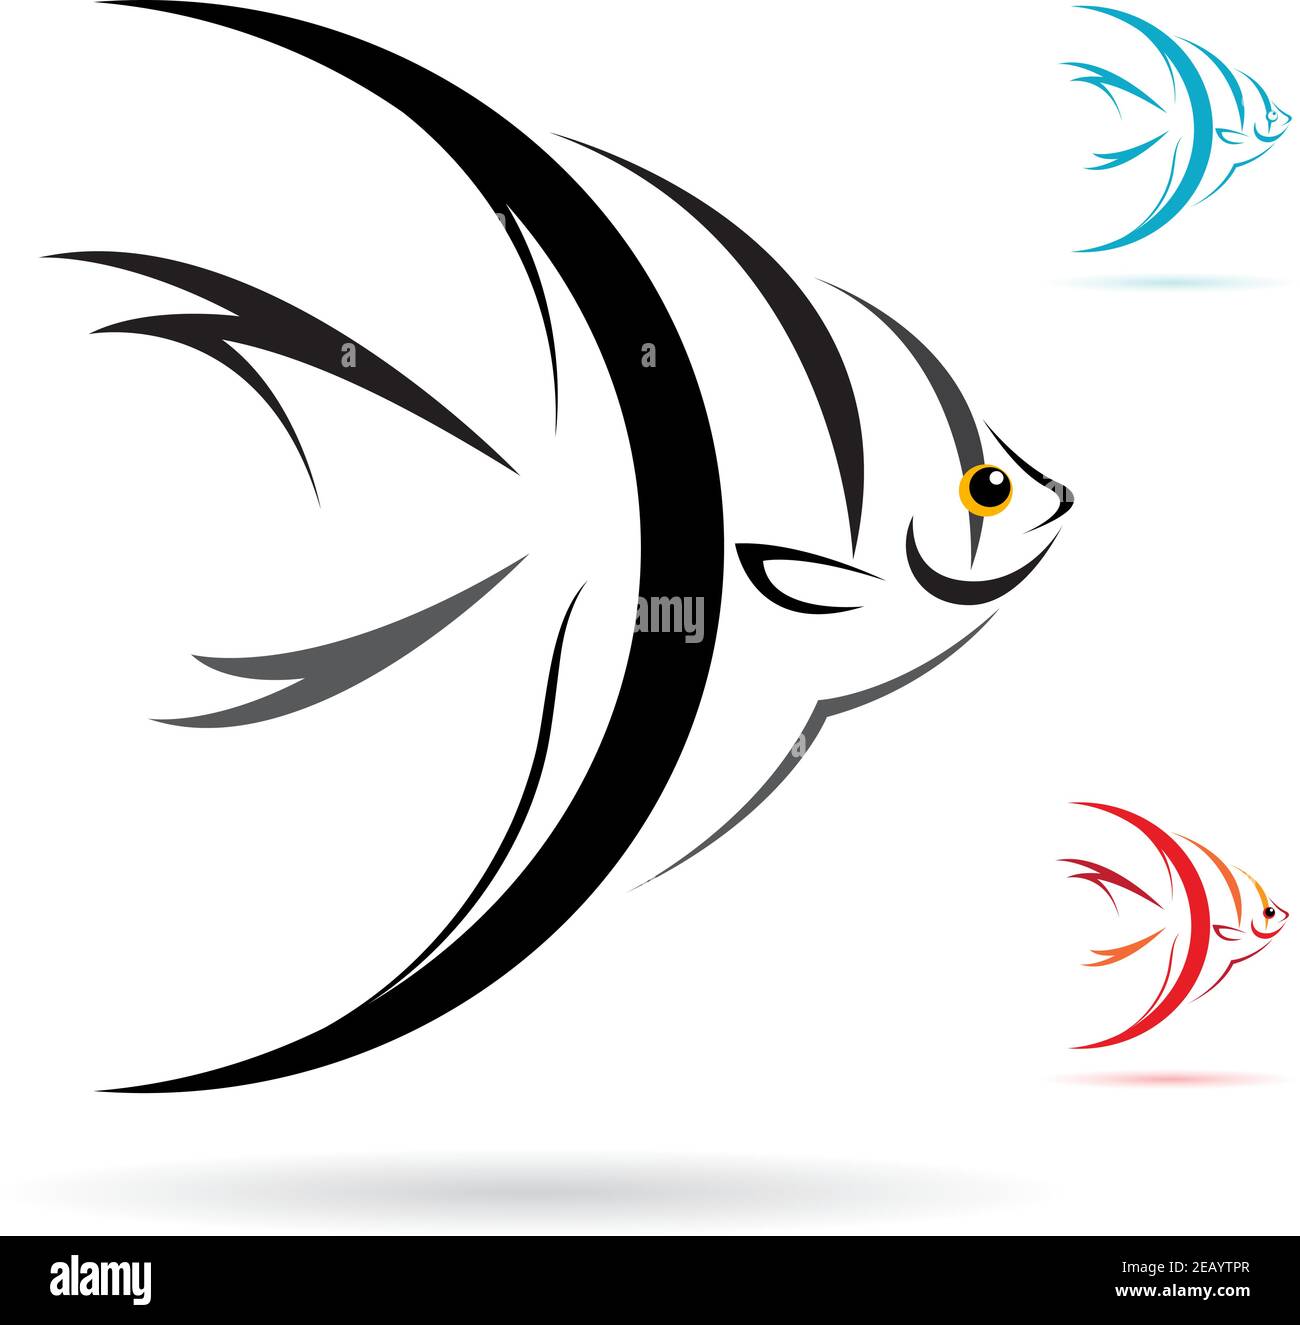 Vecteur de poisson ange sur fond blanc. Illustration vectorielle superposée facile à modifier. Animaux sauvages. Illustration de Vecteur